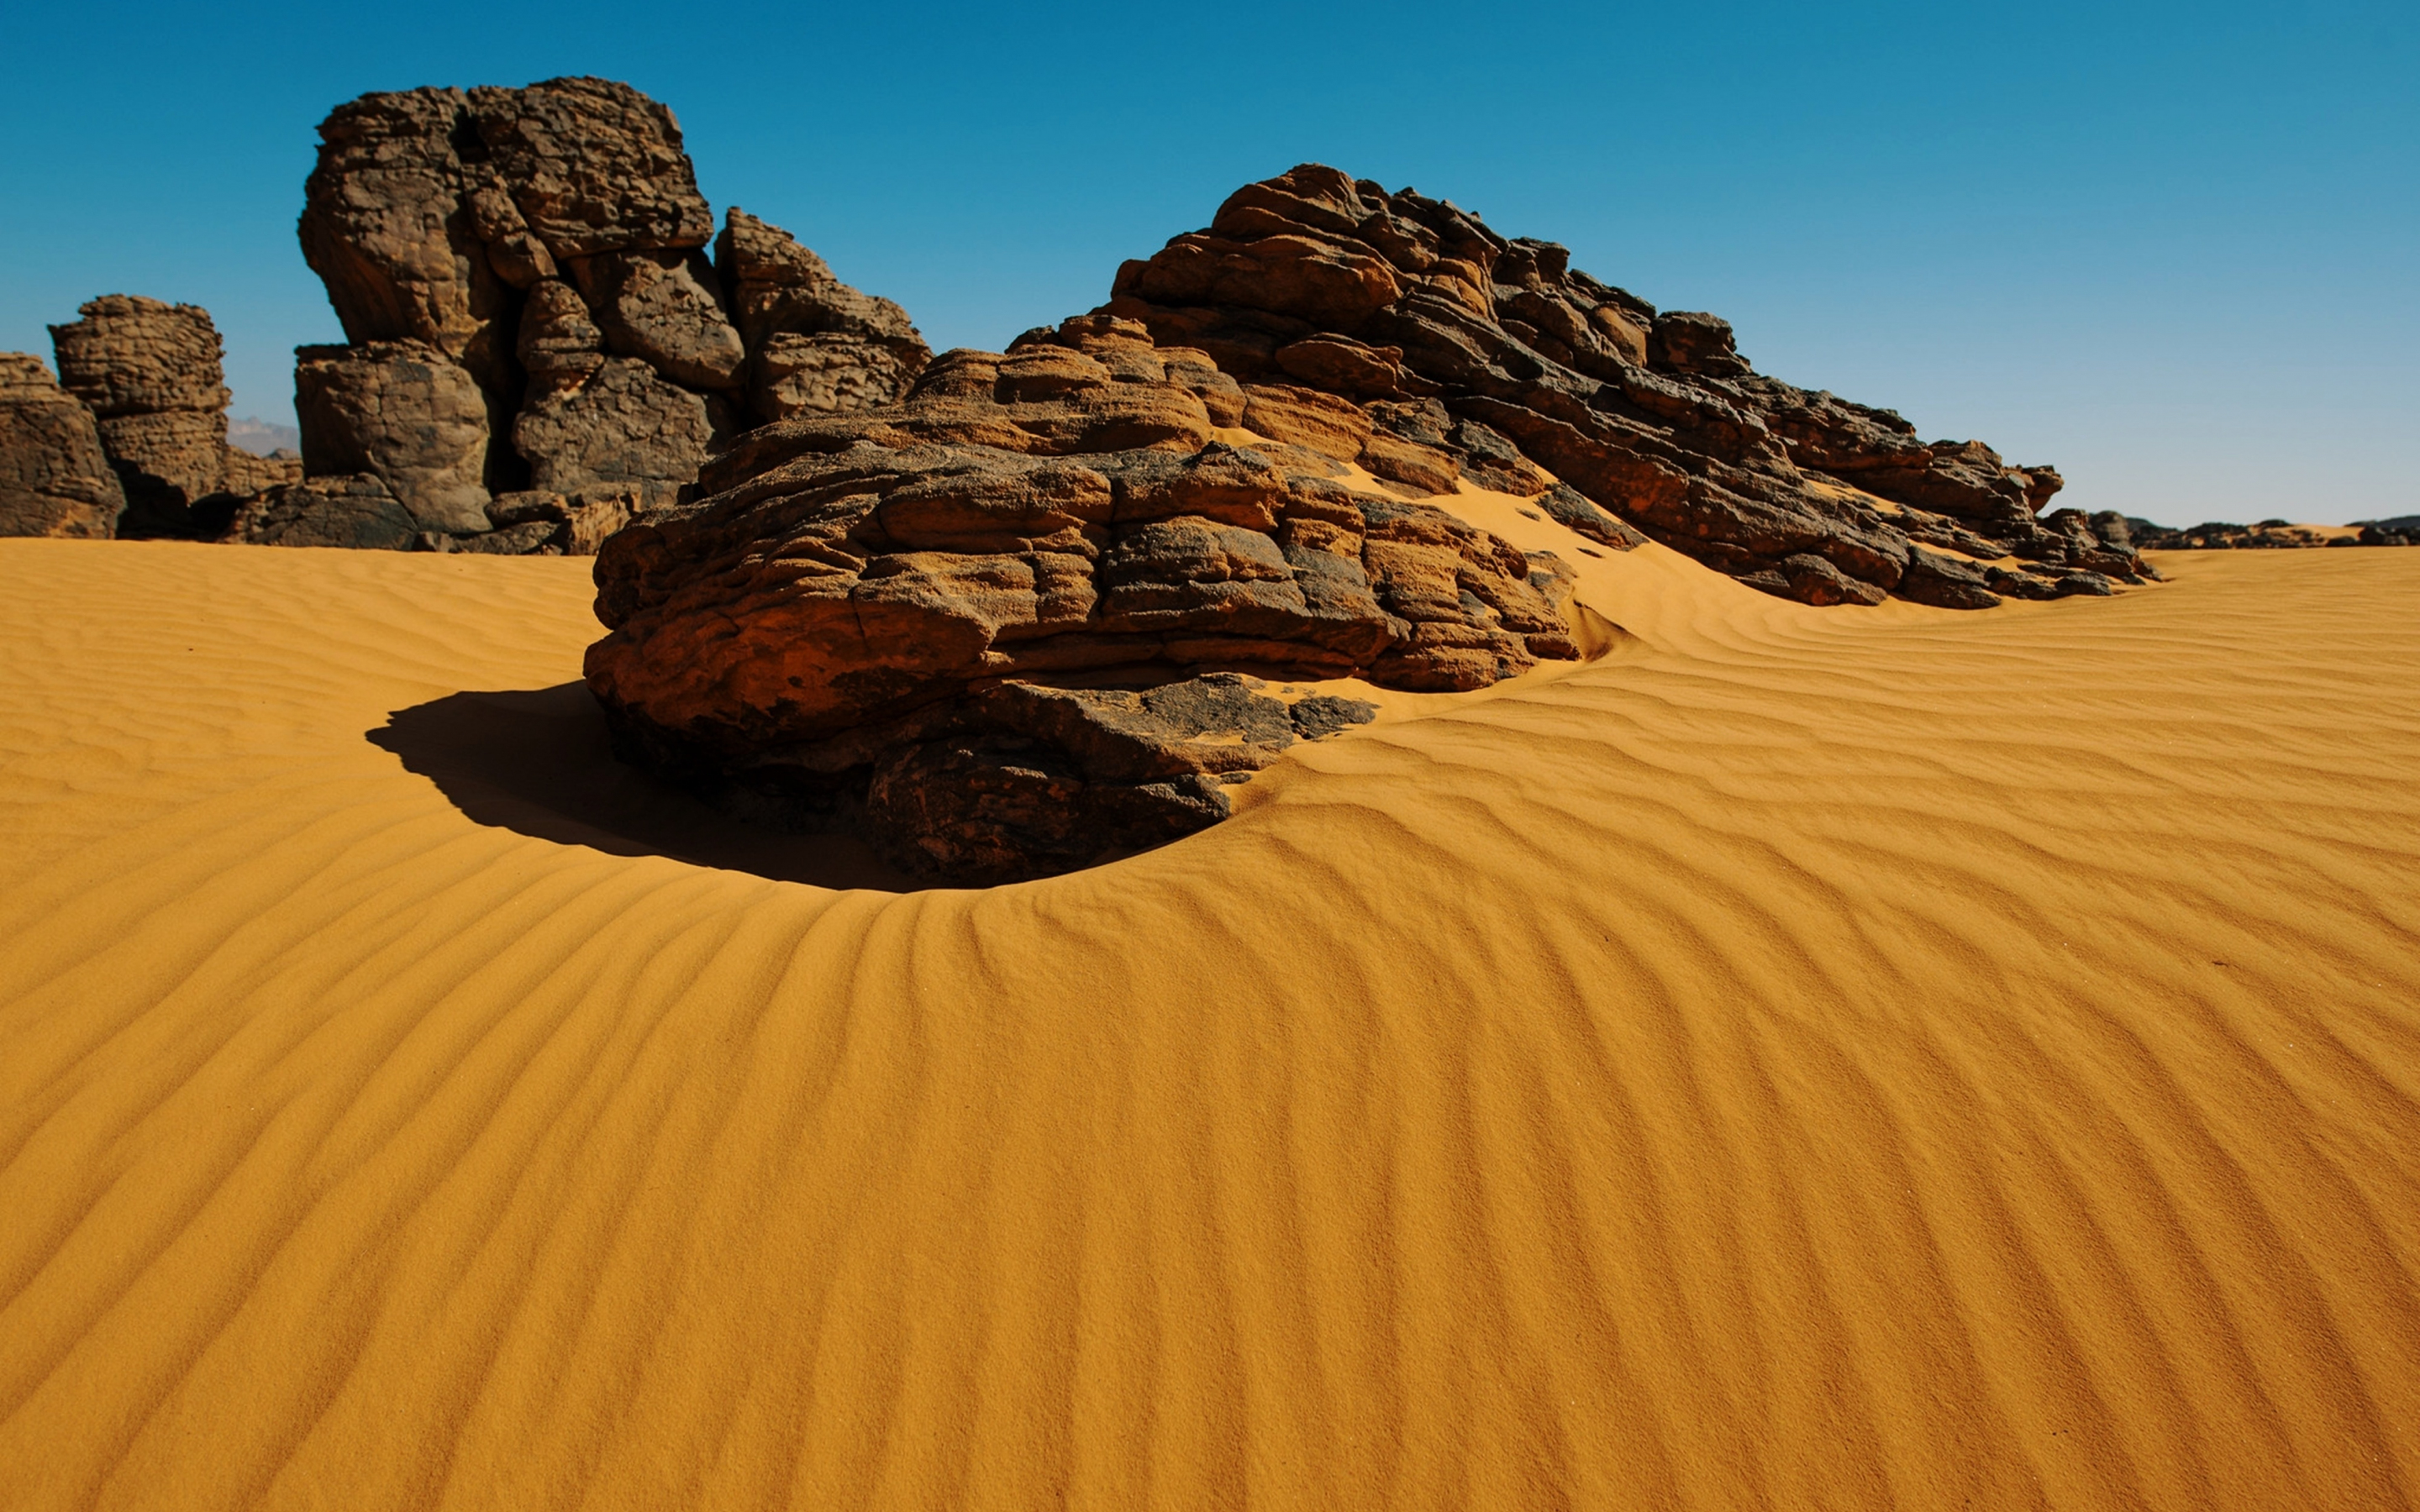 Algeria desert, rocks, sand, dunes, 2880x1800 wallpaper